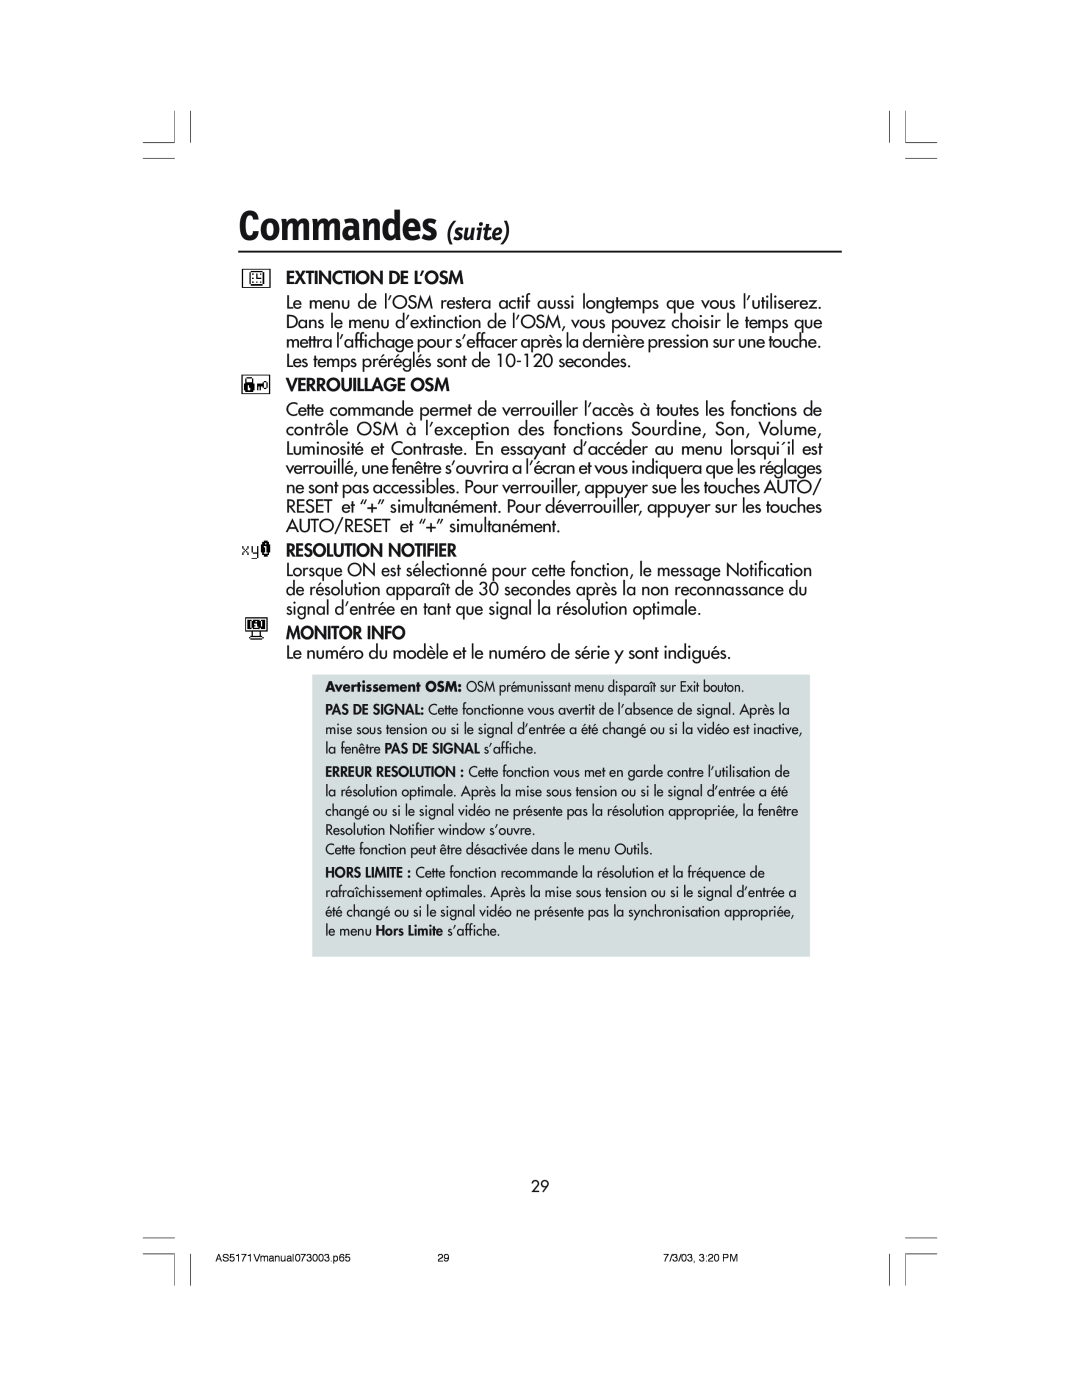 NEC LCD71V manual Commandes suite, Avertissement OSM OSM prŽmunissant menu dispara”t sur Exit bouton 